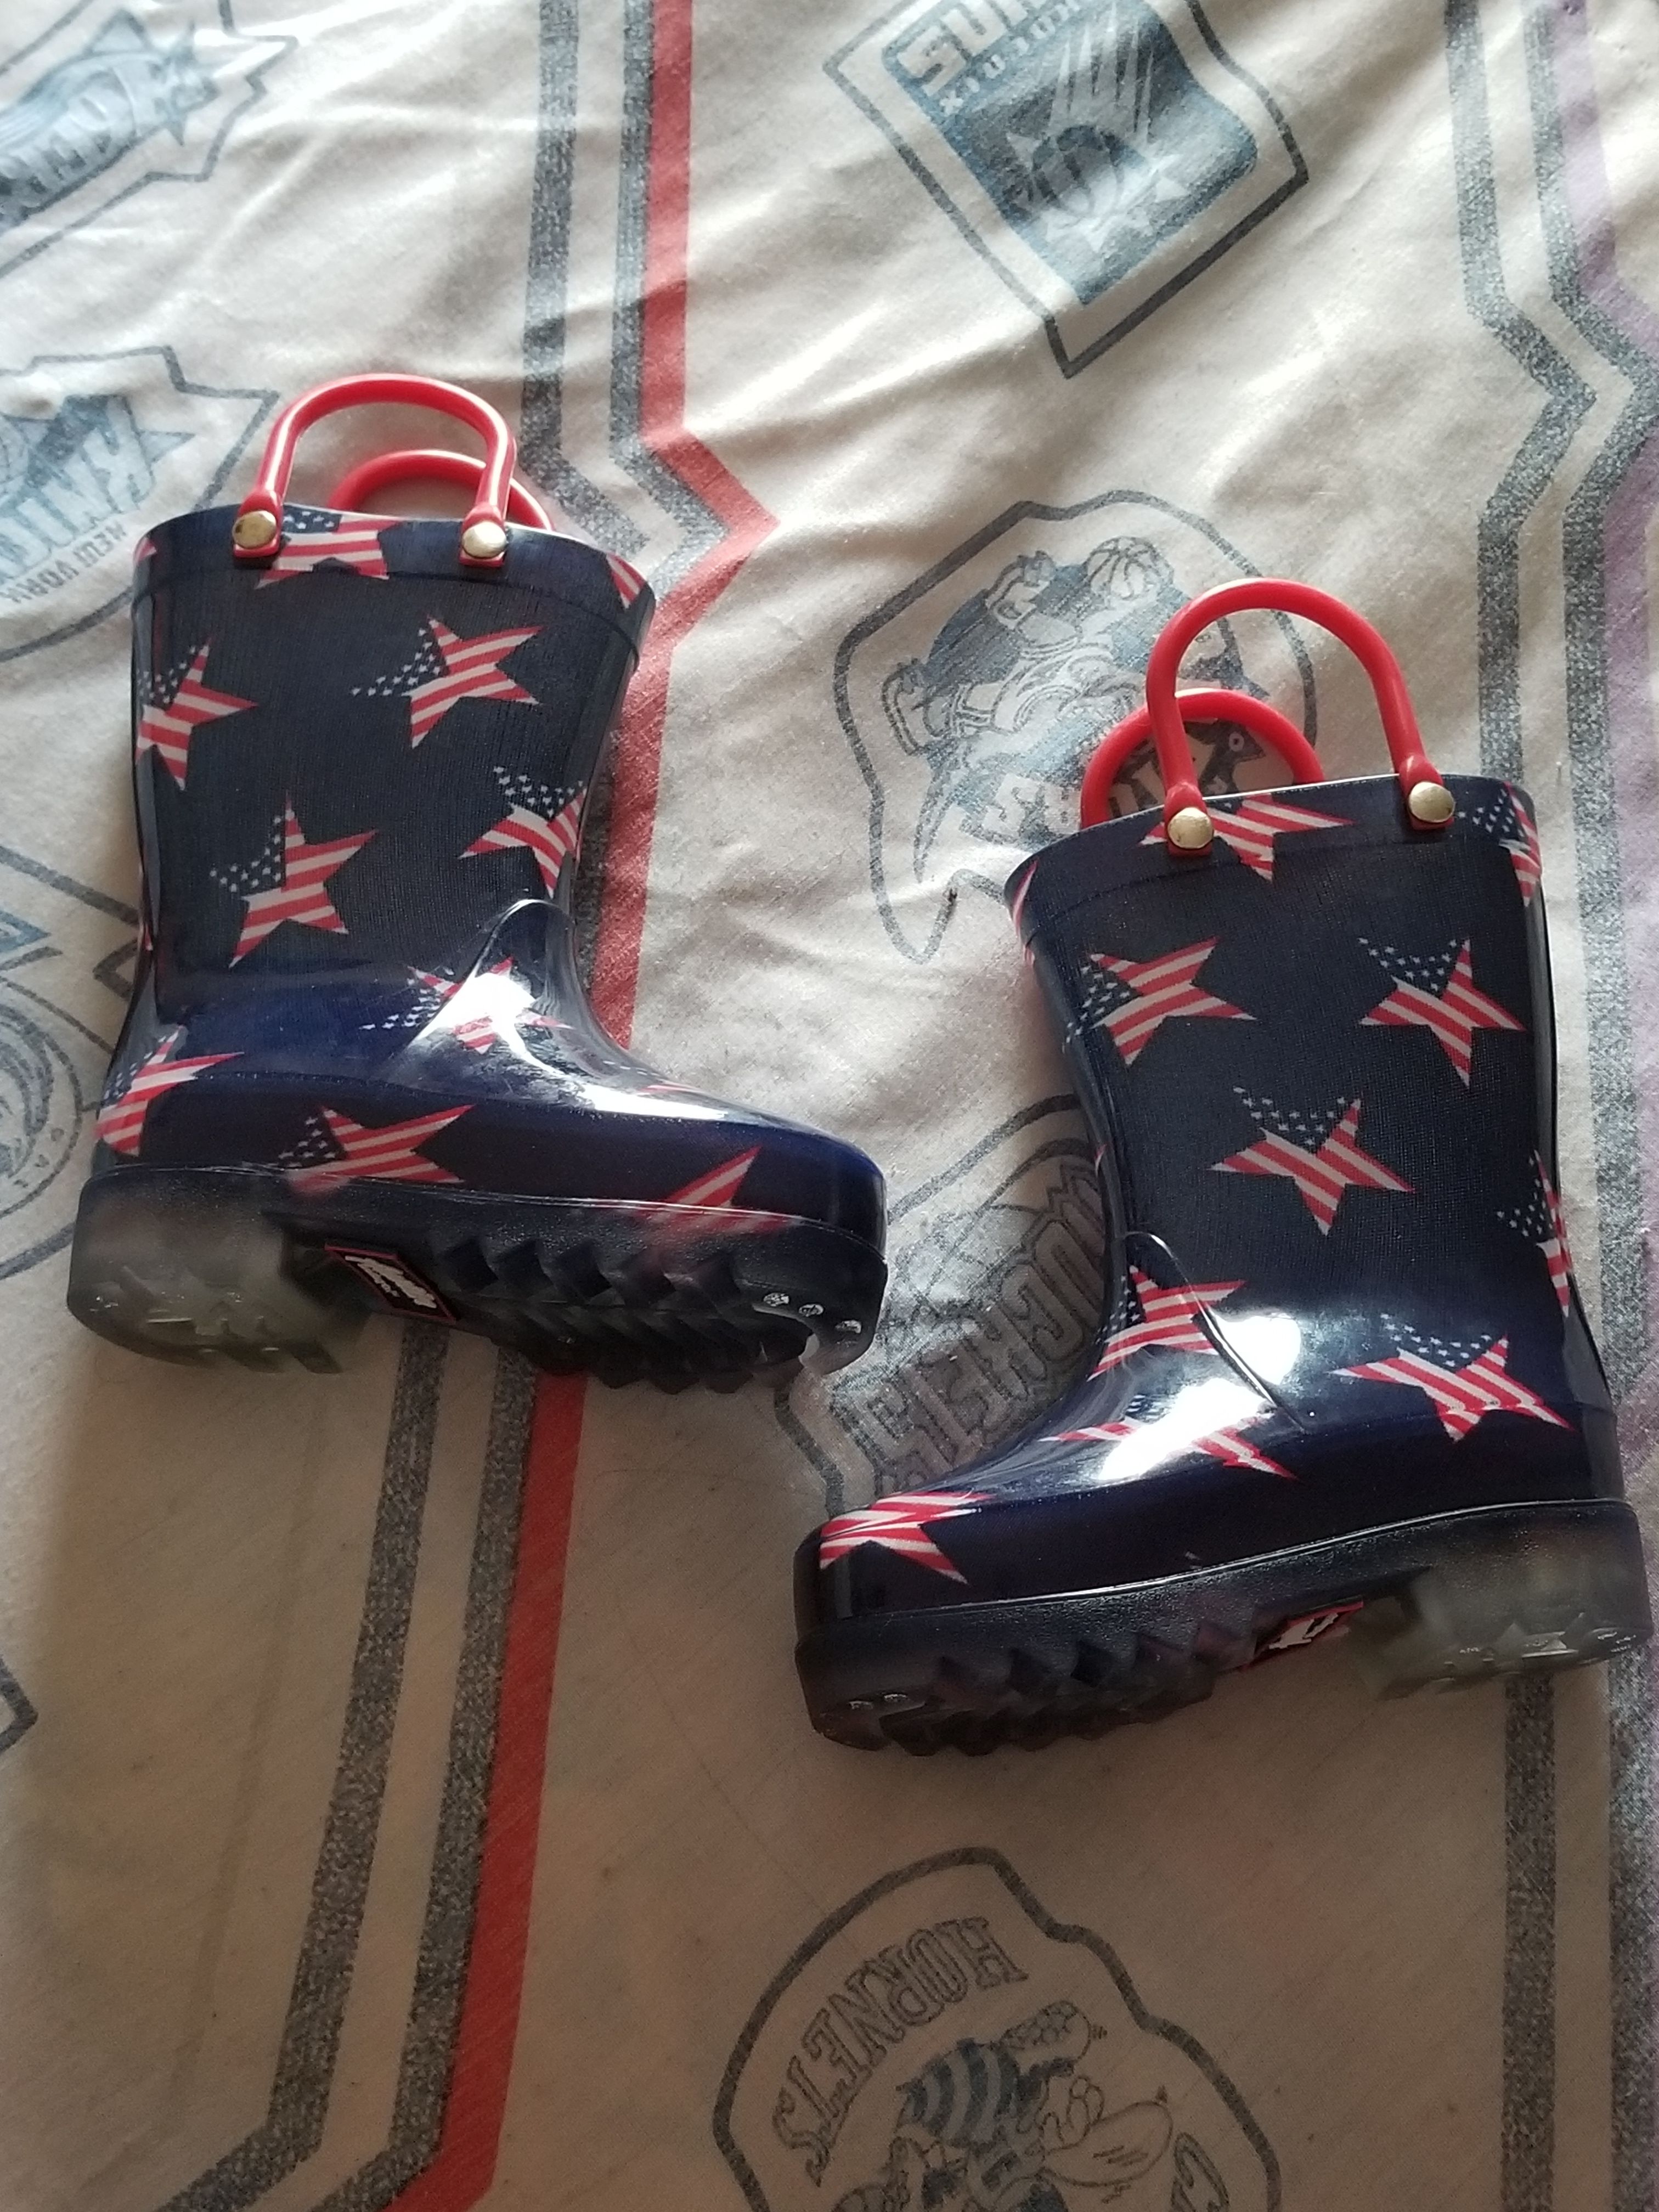 Light up rain boots